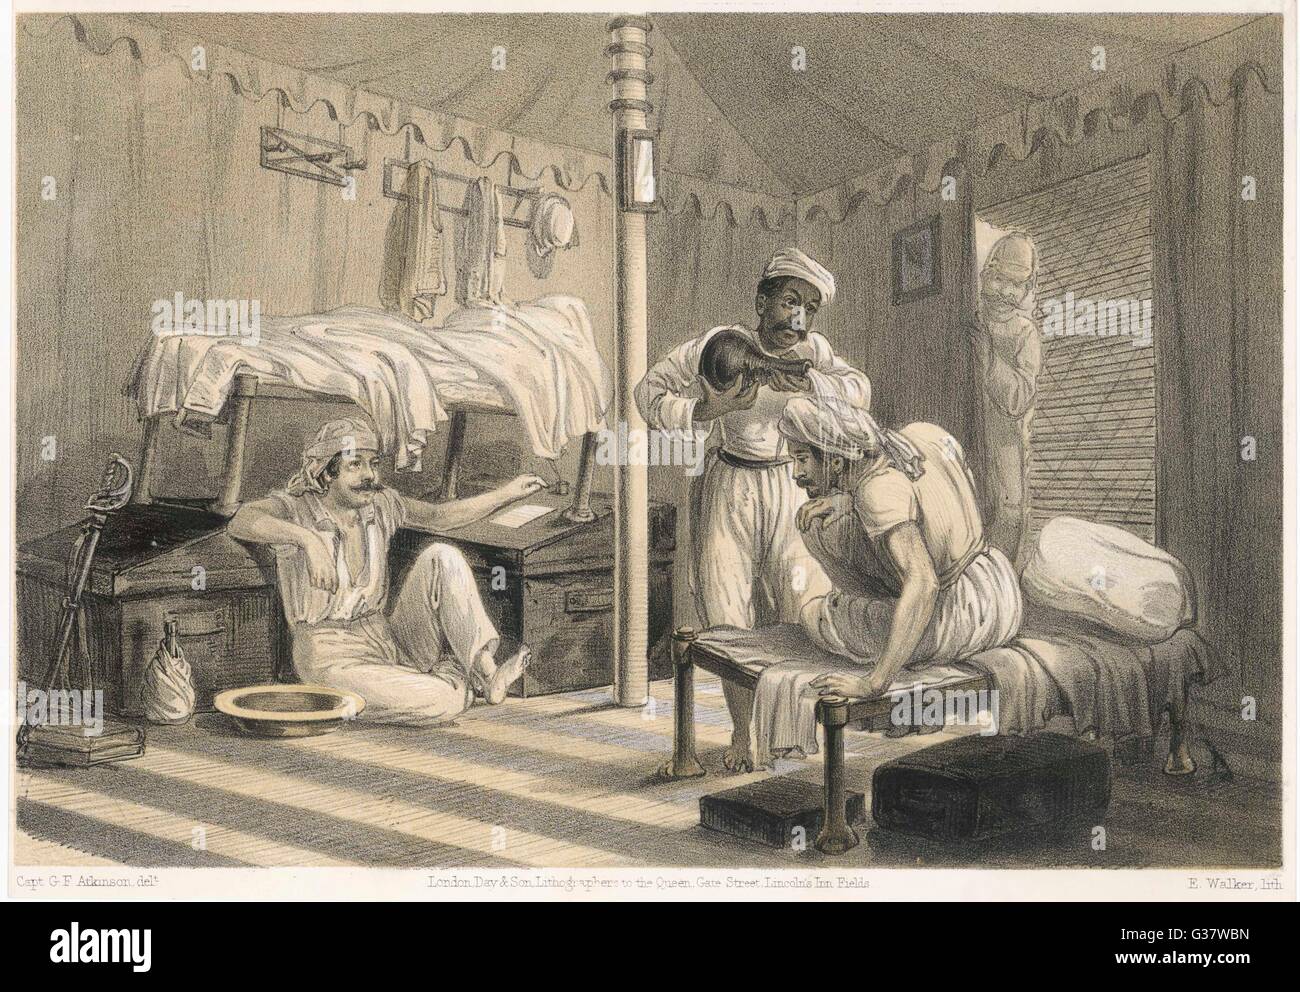 Gli ufficiali britannici si rilassano nella loro tenda in India, 1860 Foto Stock